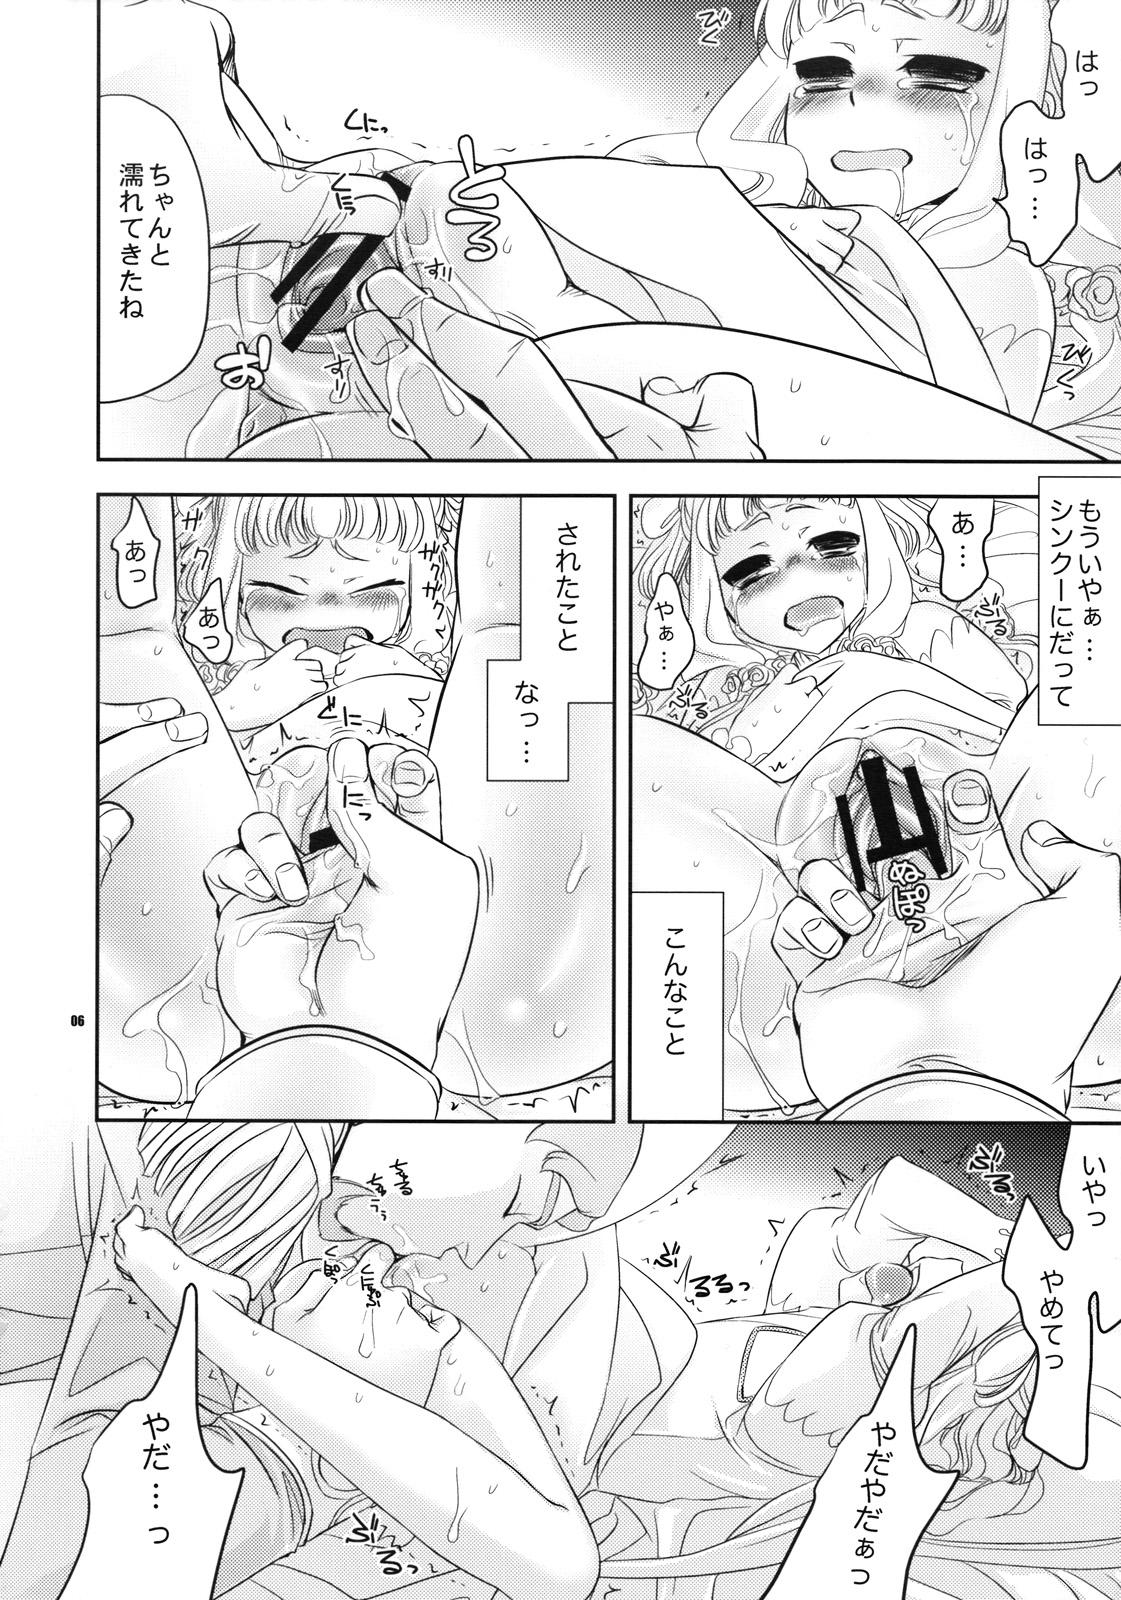 Teenfuns Yappari Sekai wo Heiwa ni Michibiku Tameni Tenshi wa Odesseusu to Kekkon Shimashita. - Code geass Gay Group - Page 5